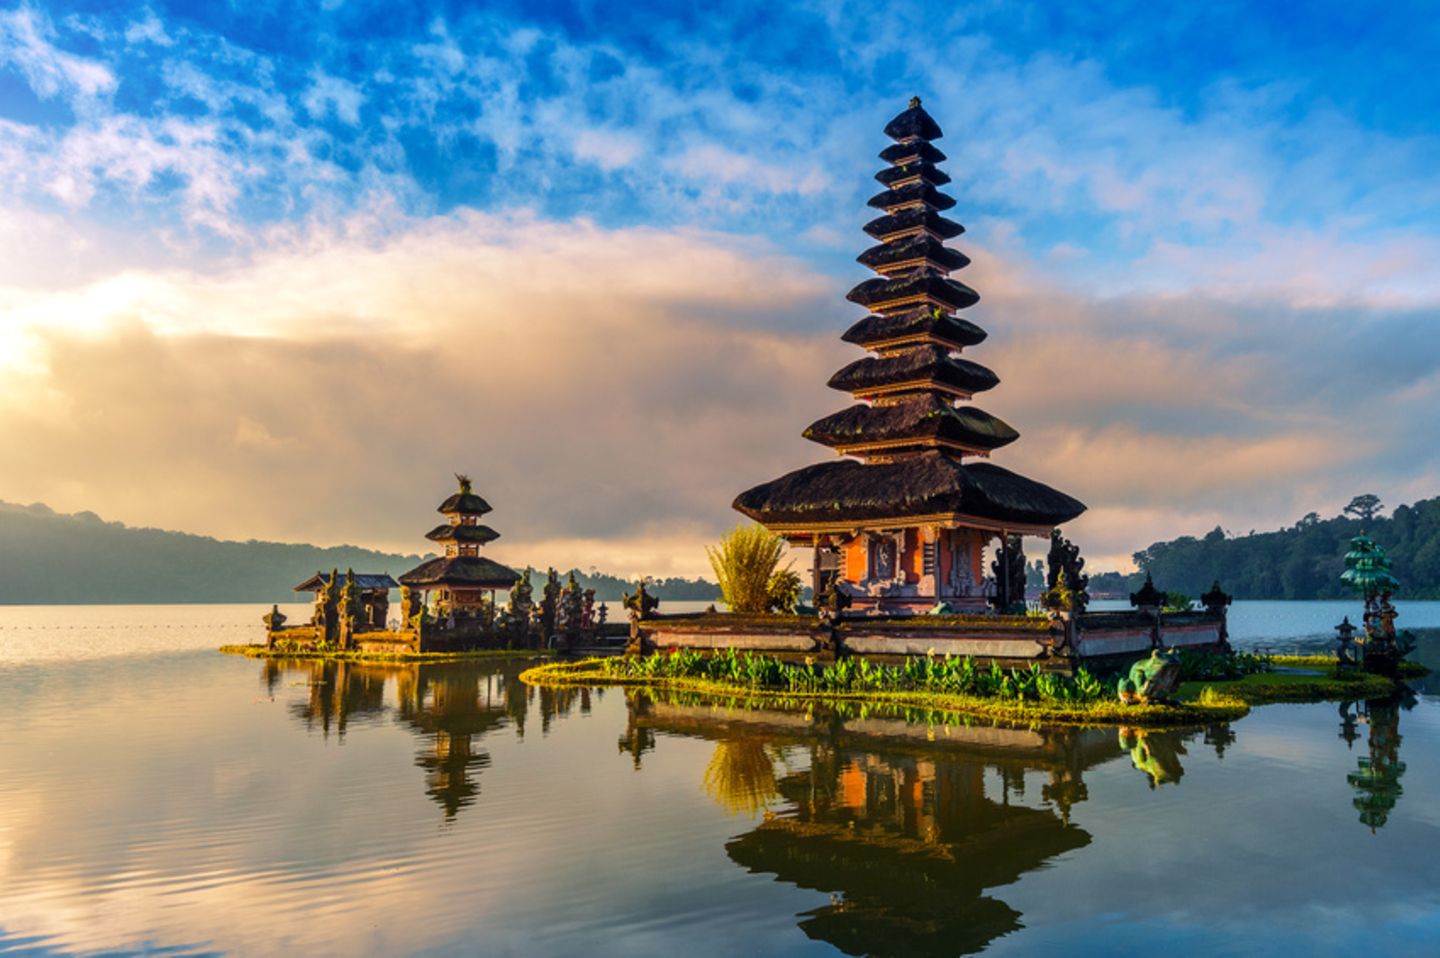 Bali - Insel voller Sehenswürdigkeiten - [GEO]